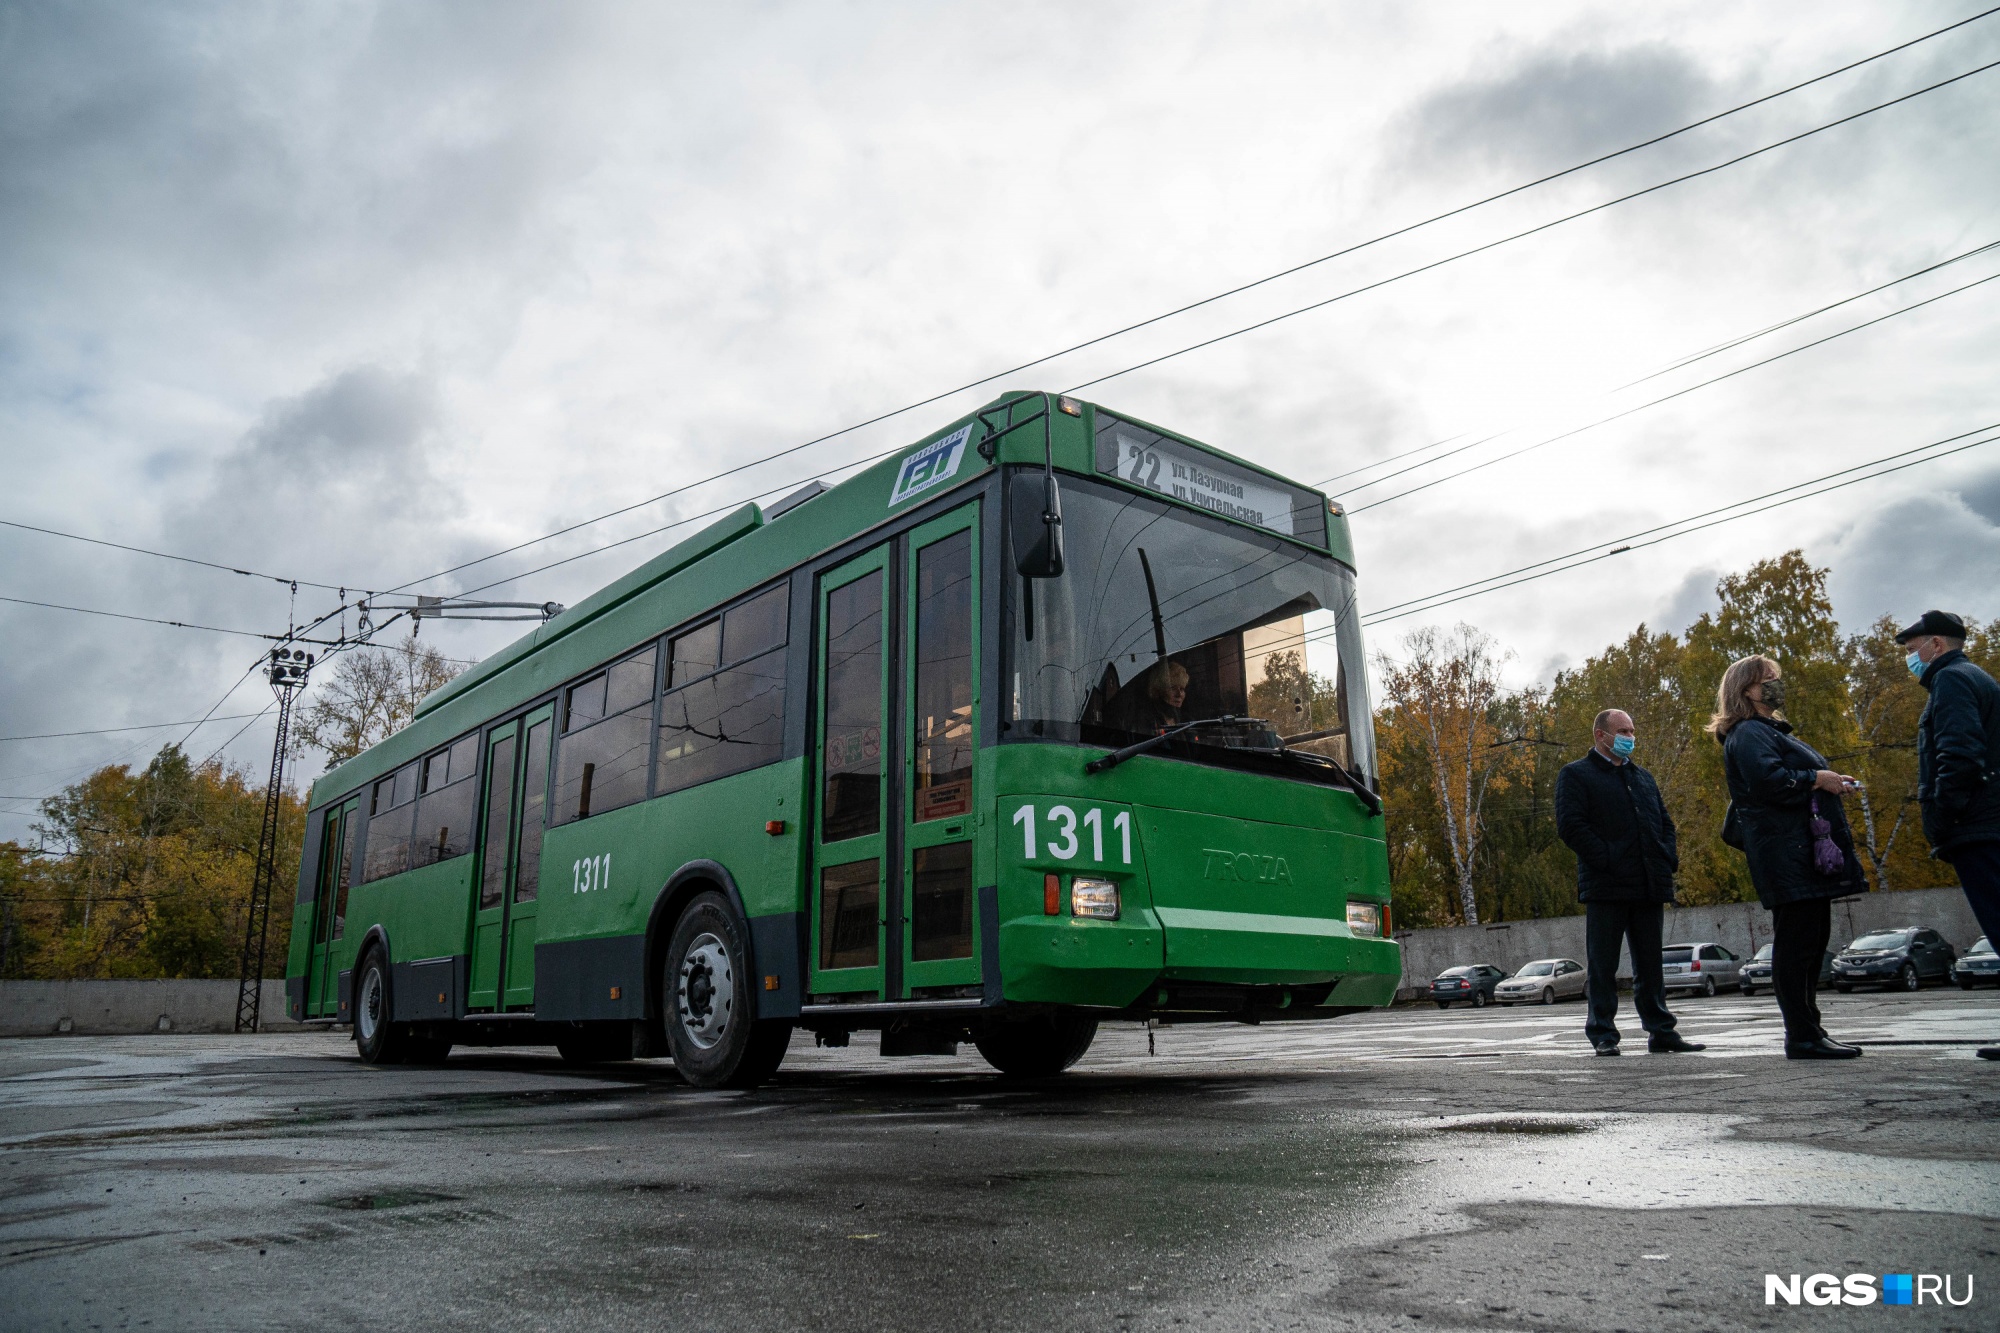 Рогатый из Твери. Как в Новосибирске отремонтировали первый «ржавый» троллейбус и пустили на линию